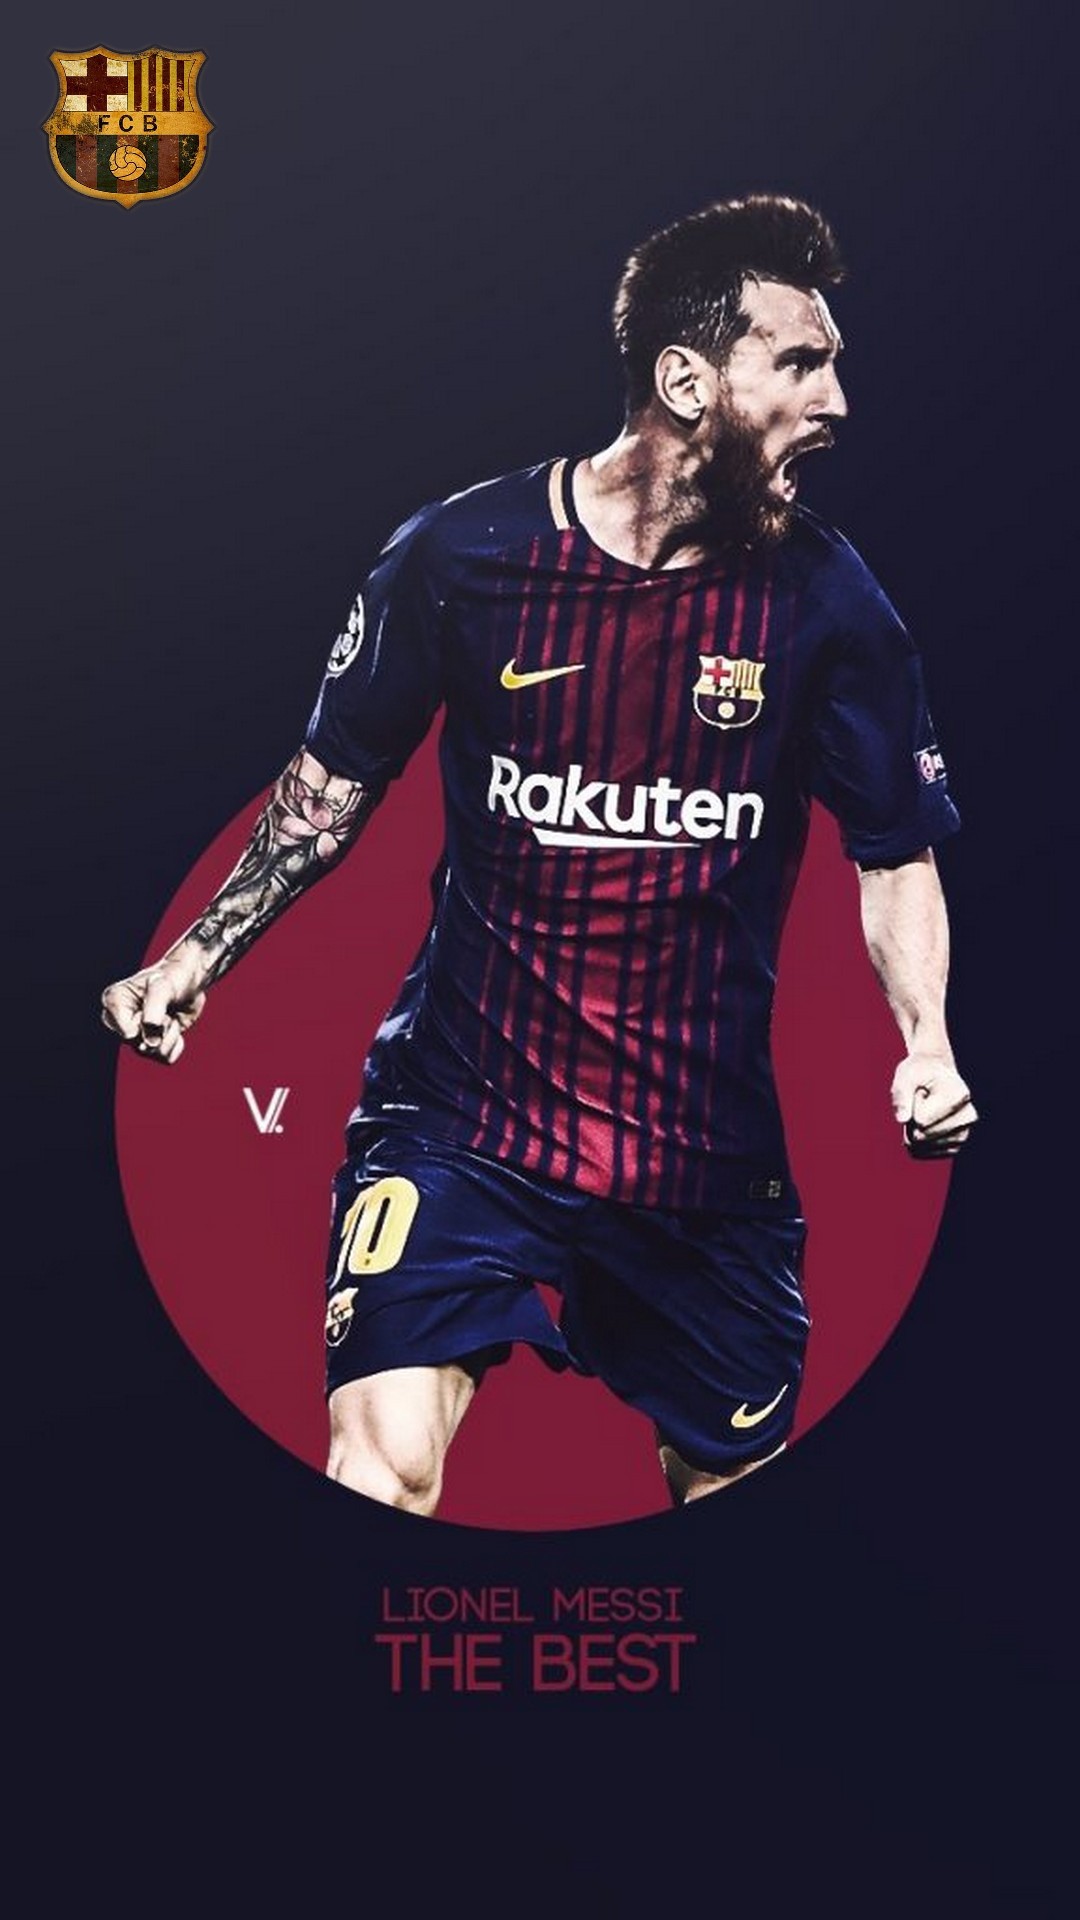 fc barcelona phone wallpaper,football player,t shirt,jersey,soccer player,player